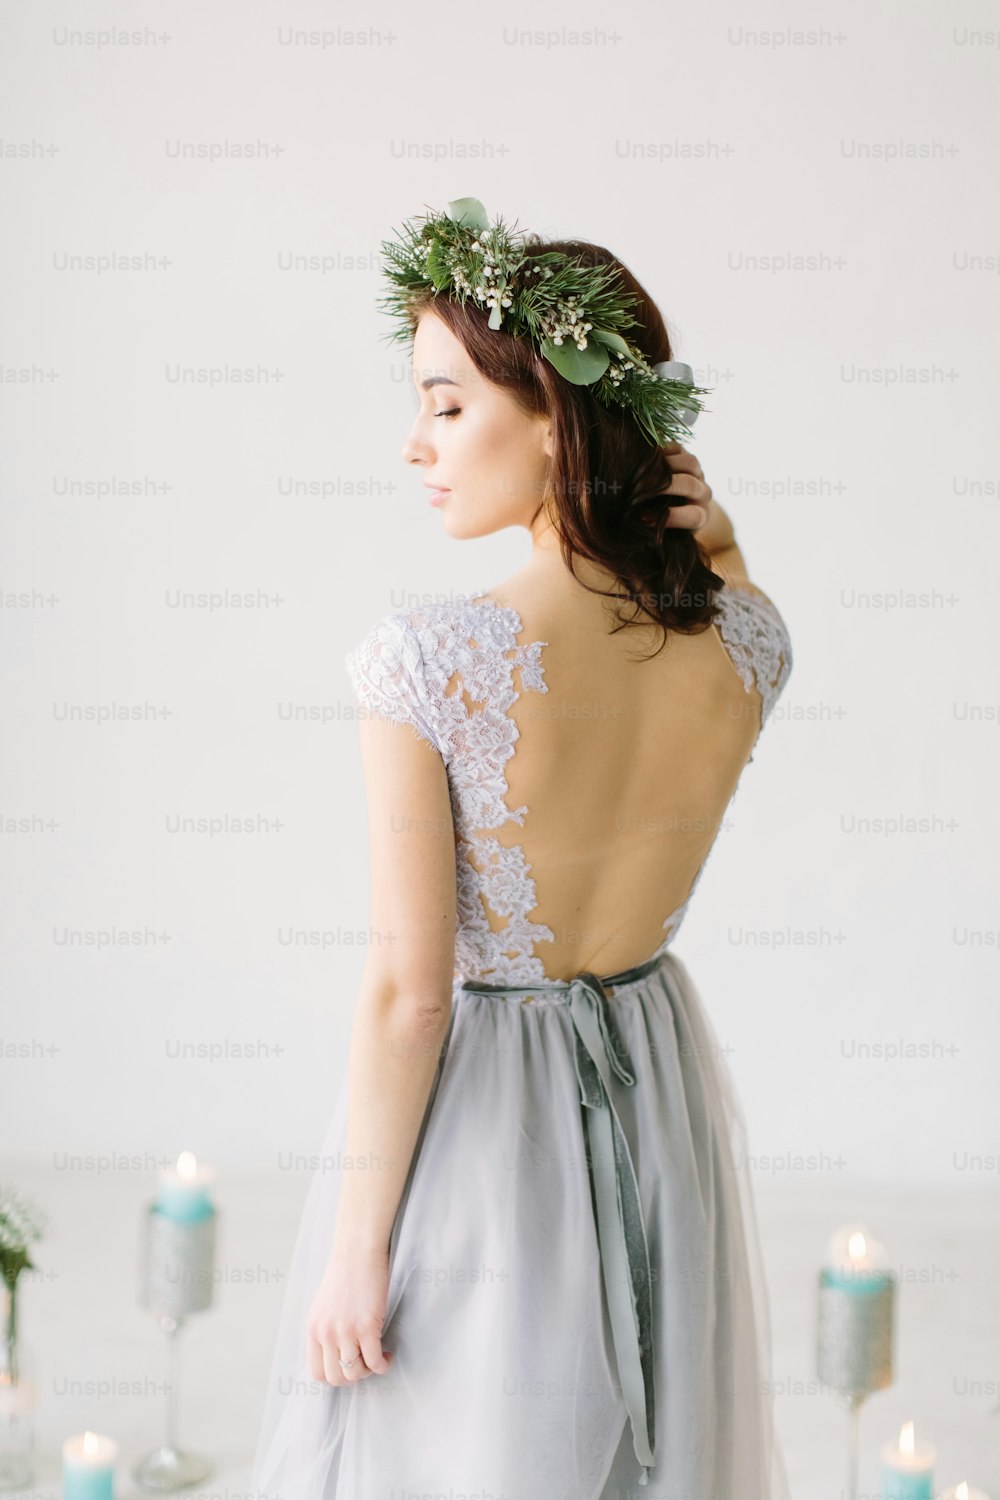 Hermosa joven con un vestido de noche gris y una corona de pino y eucalipto en la cabeza posa en el fondo del paisaje de la boda. Bridesmade posa en el estudio antes de la ceremonia de la boda.